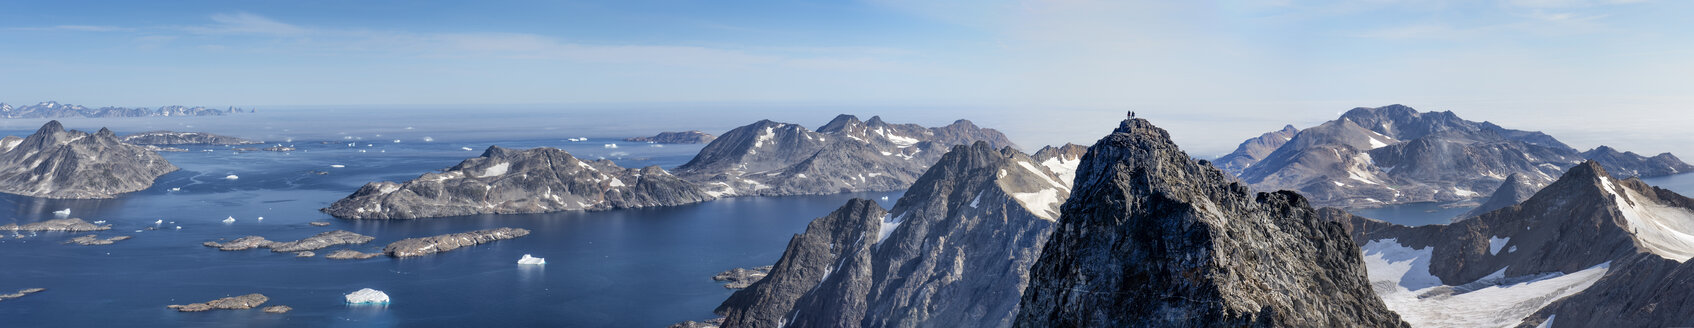 Grönland, Kulusuk, Bergsteiger in den Schweizerland Alpen - ALRF000359